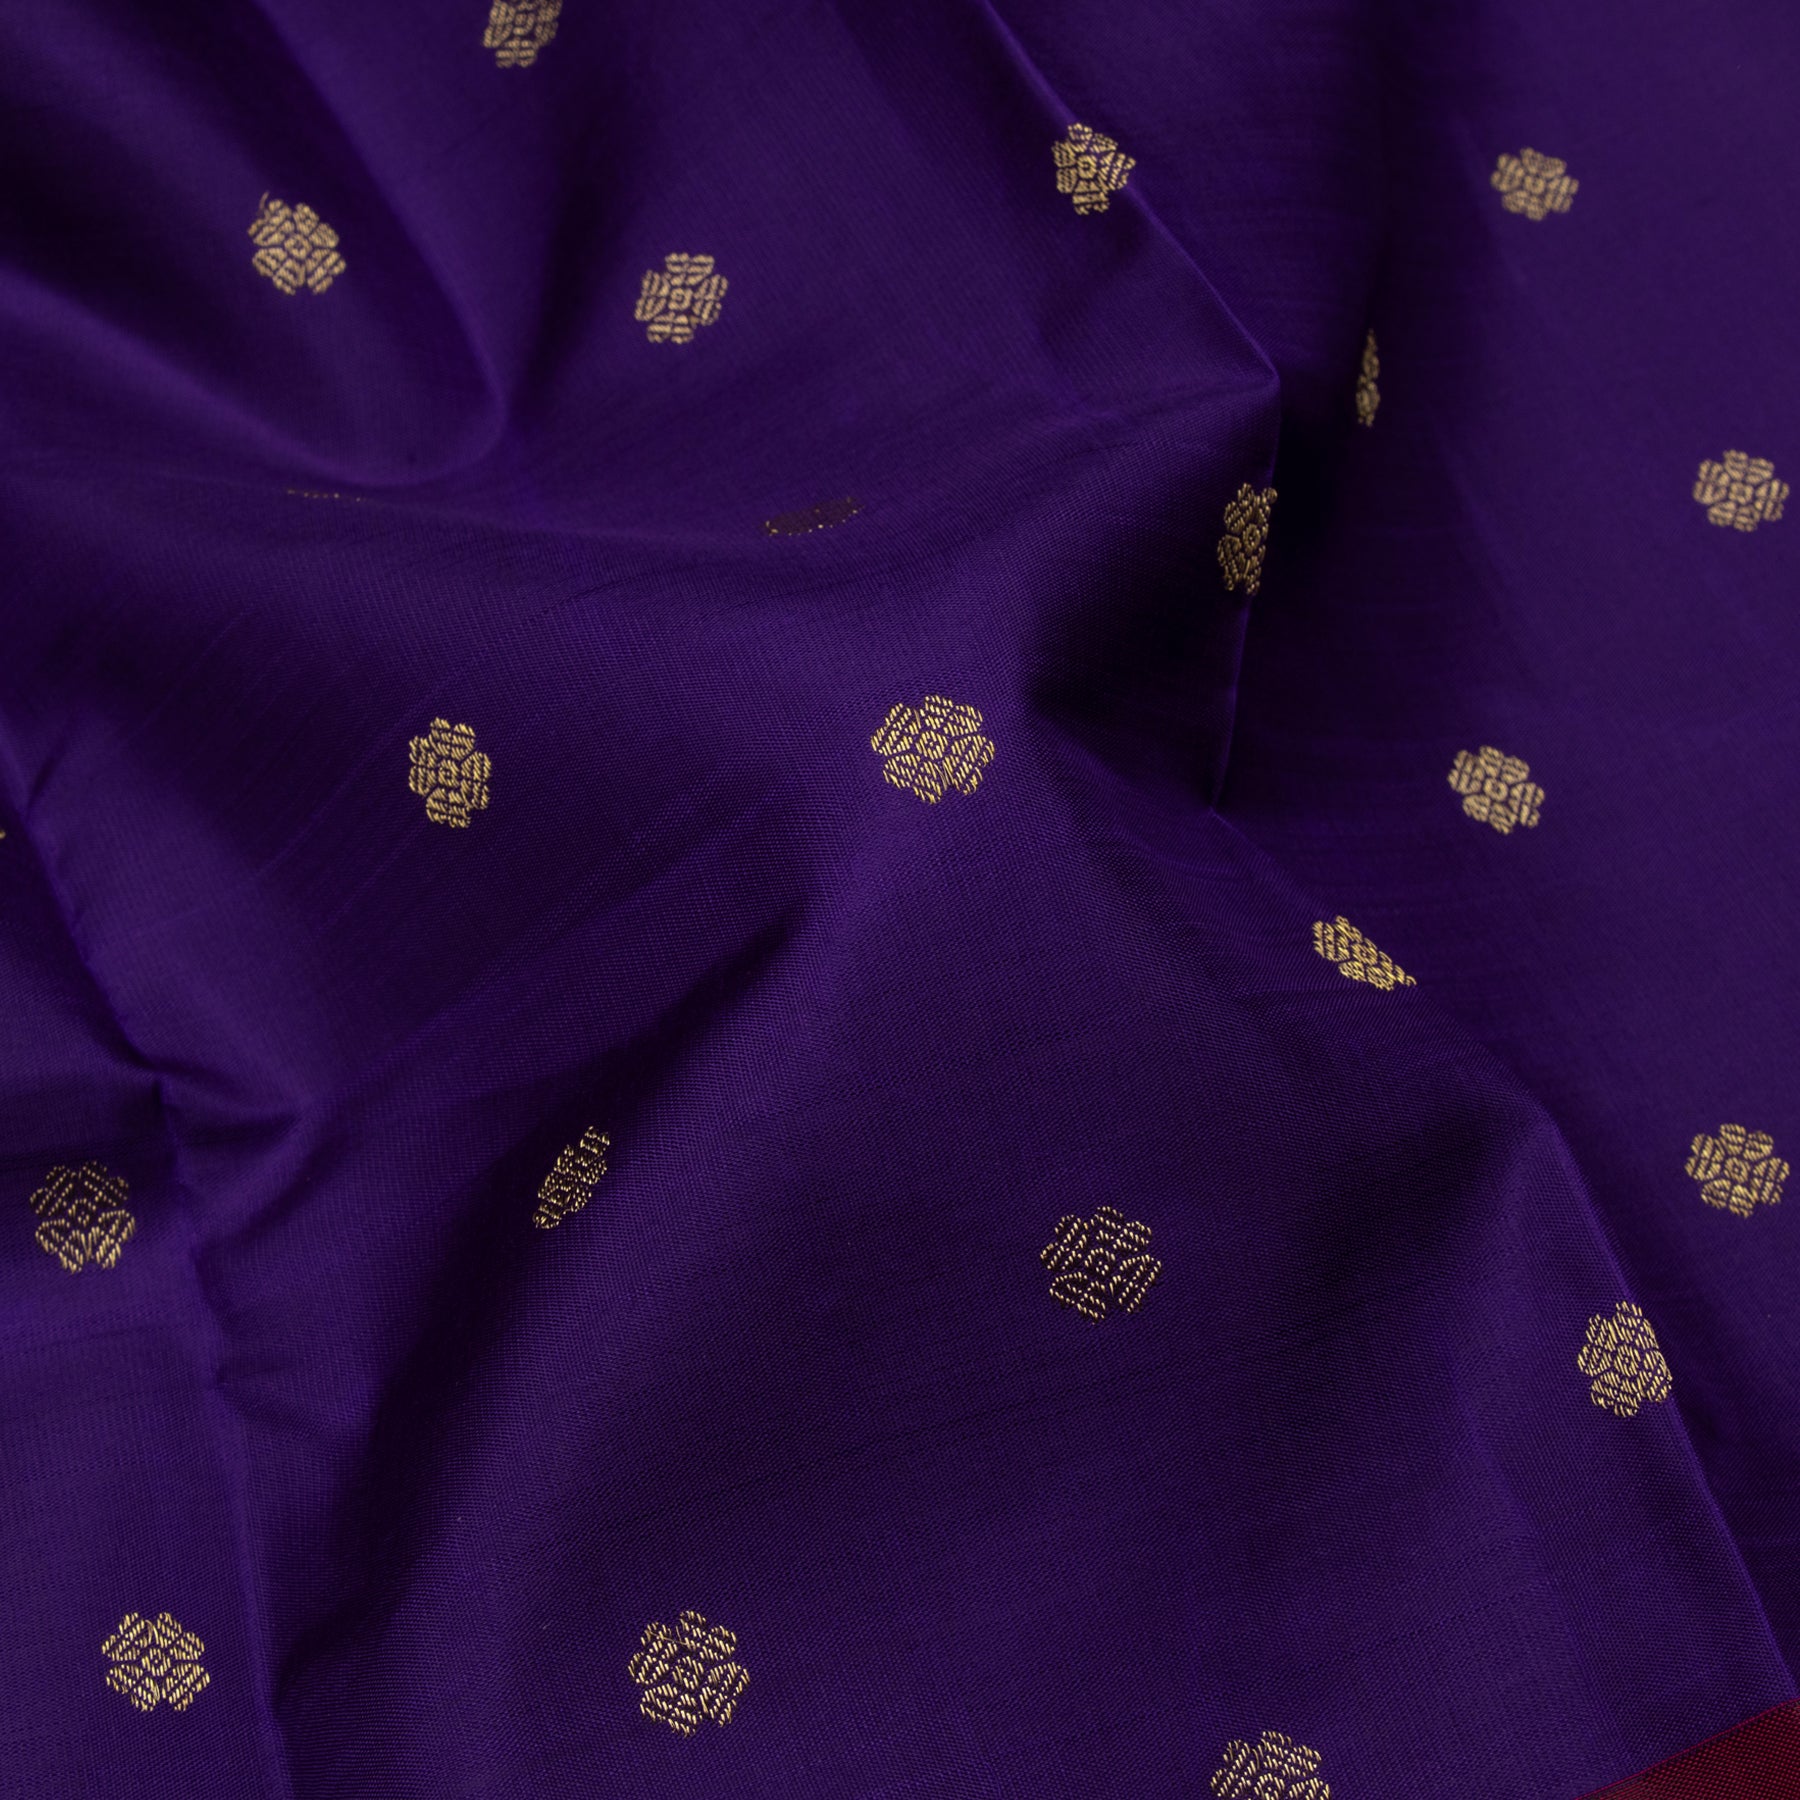 Kanakavalli Kanjivaram Silk Sari 23-595-HS001-13716 - Fabric View